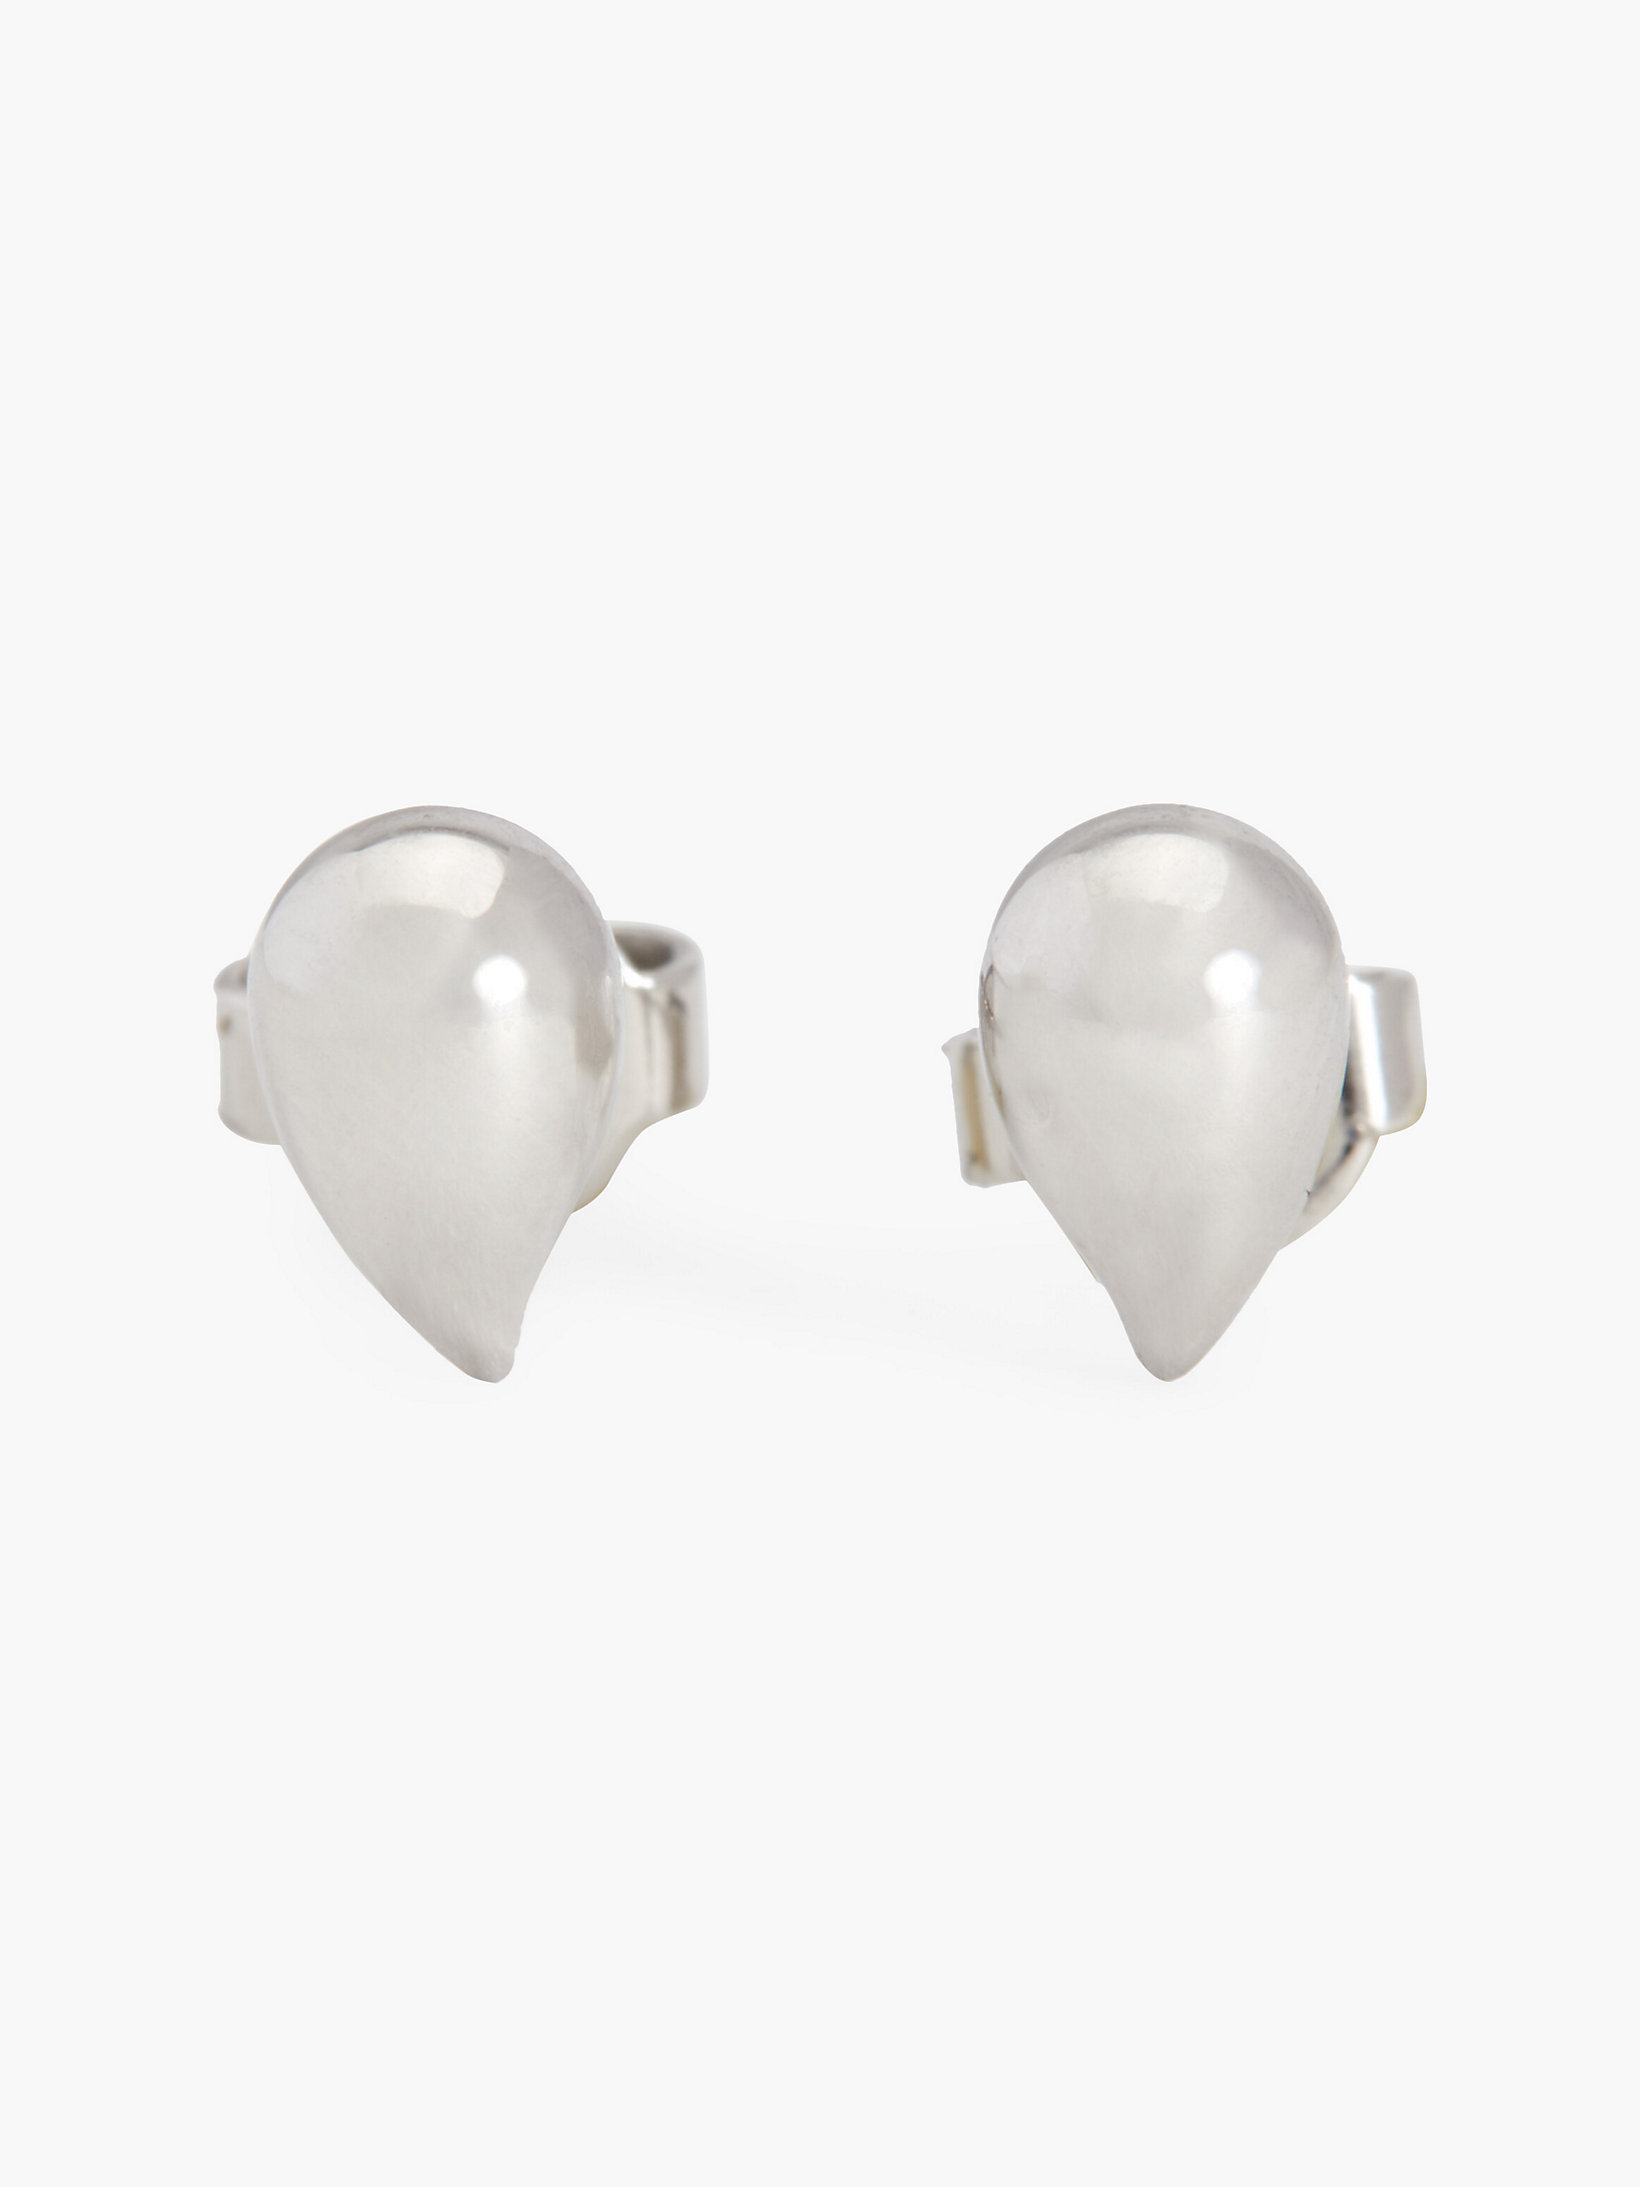 Silver Earrings - Sculptured Drops undefined women Calvin Klein